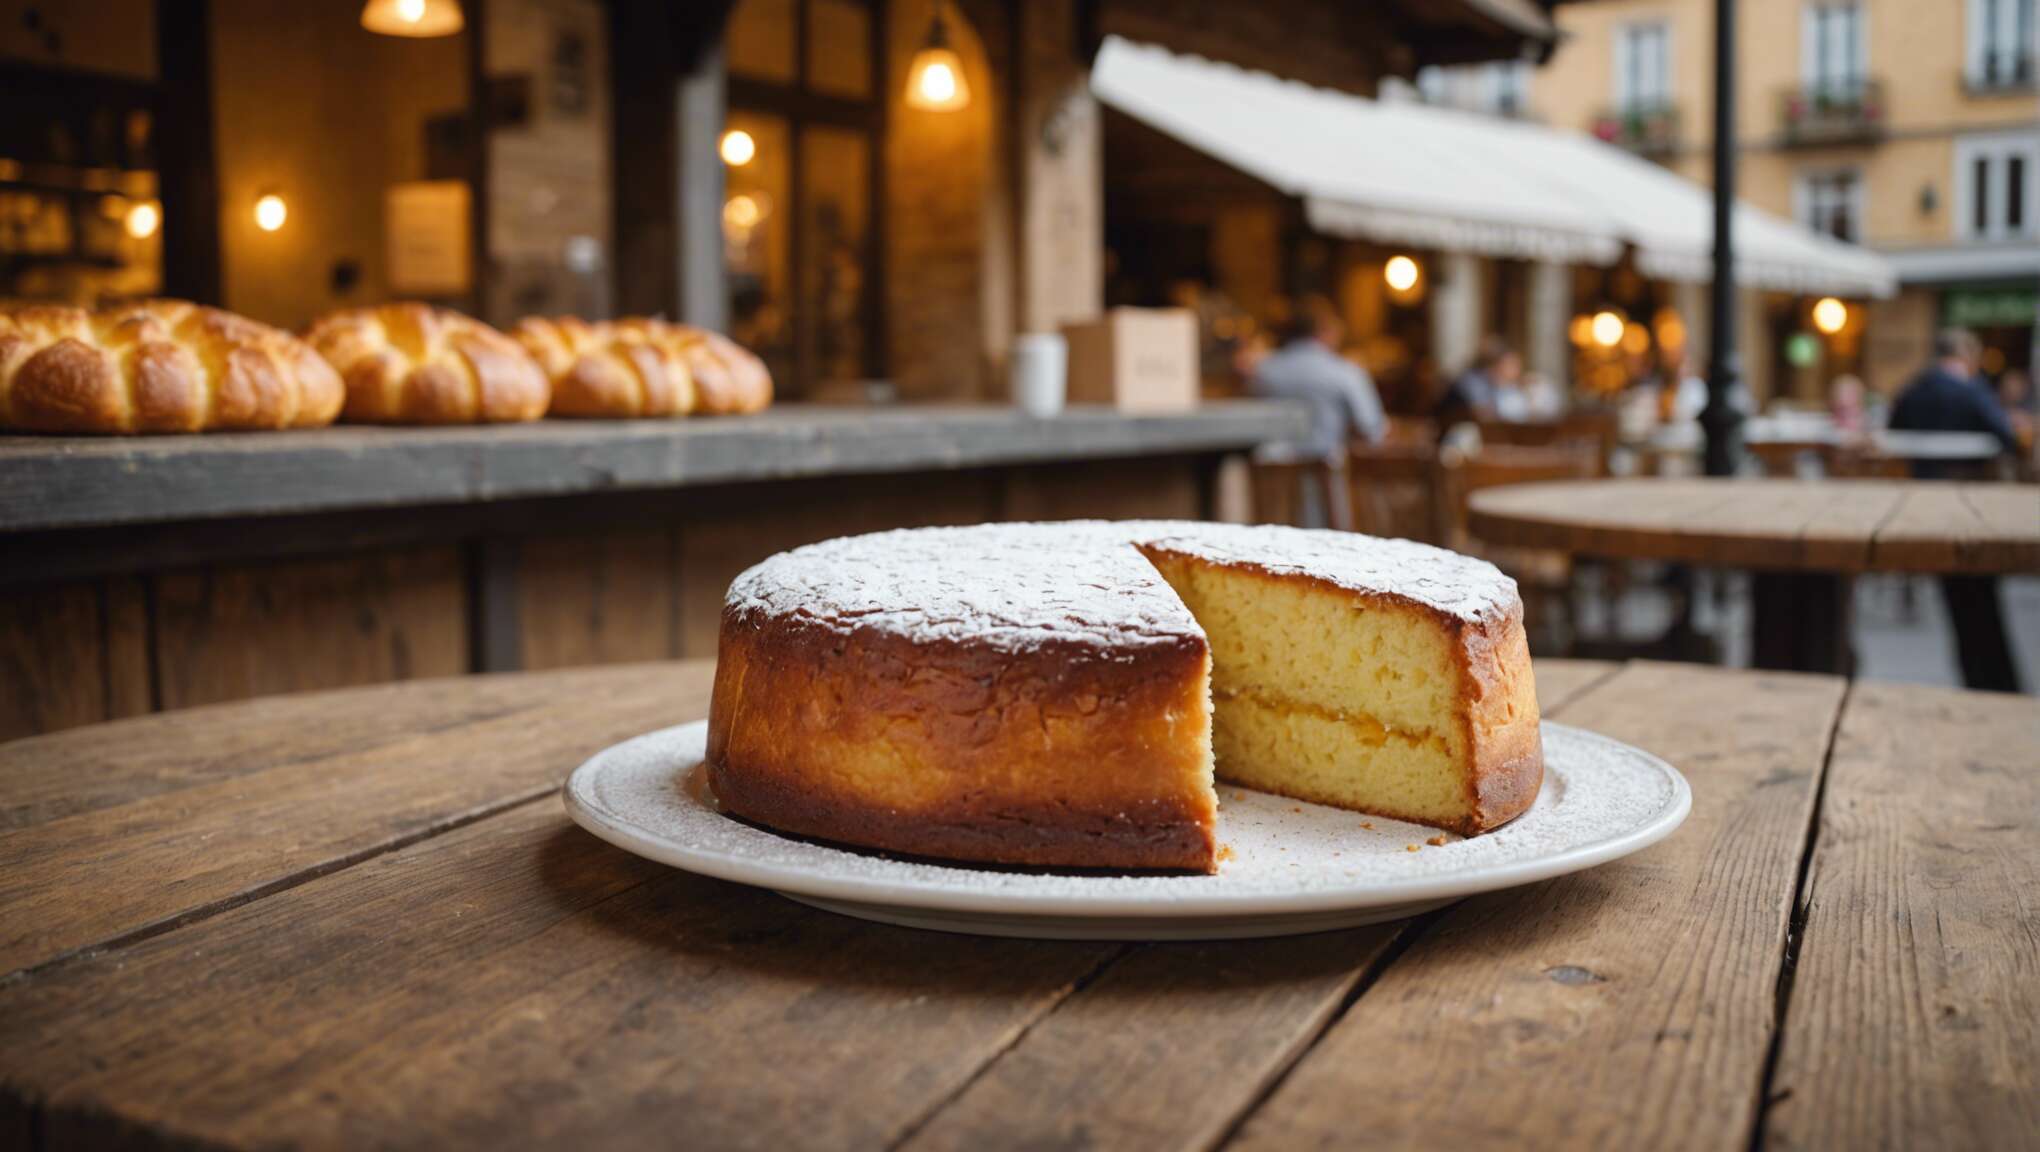 Où trouver le meilleur gâteau basque à acheter ?